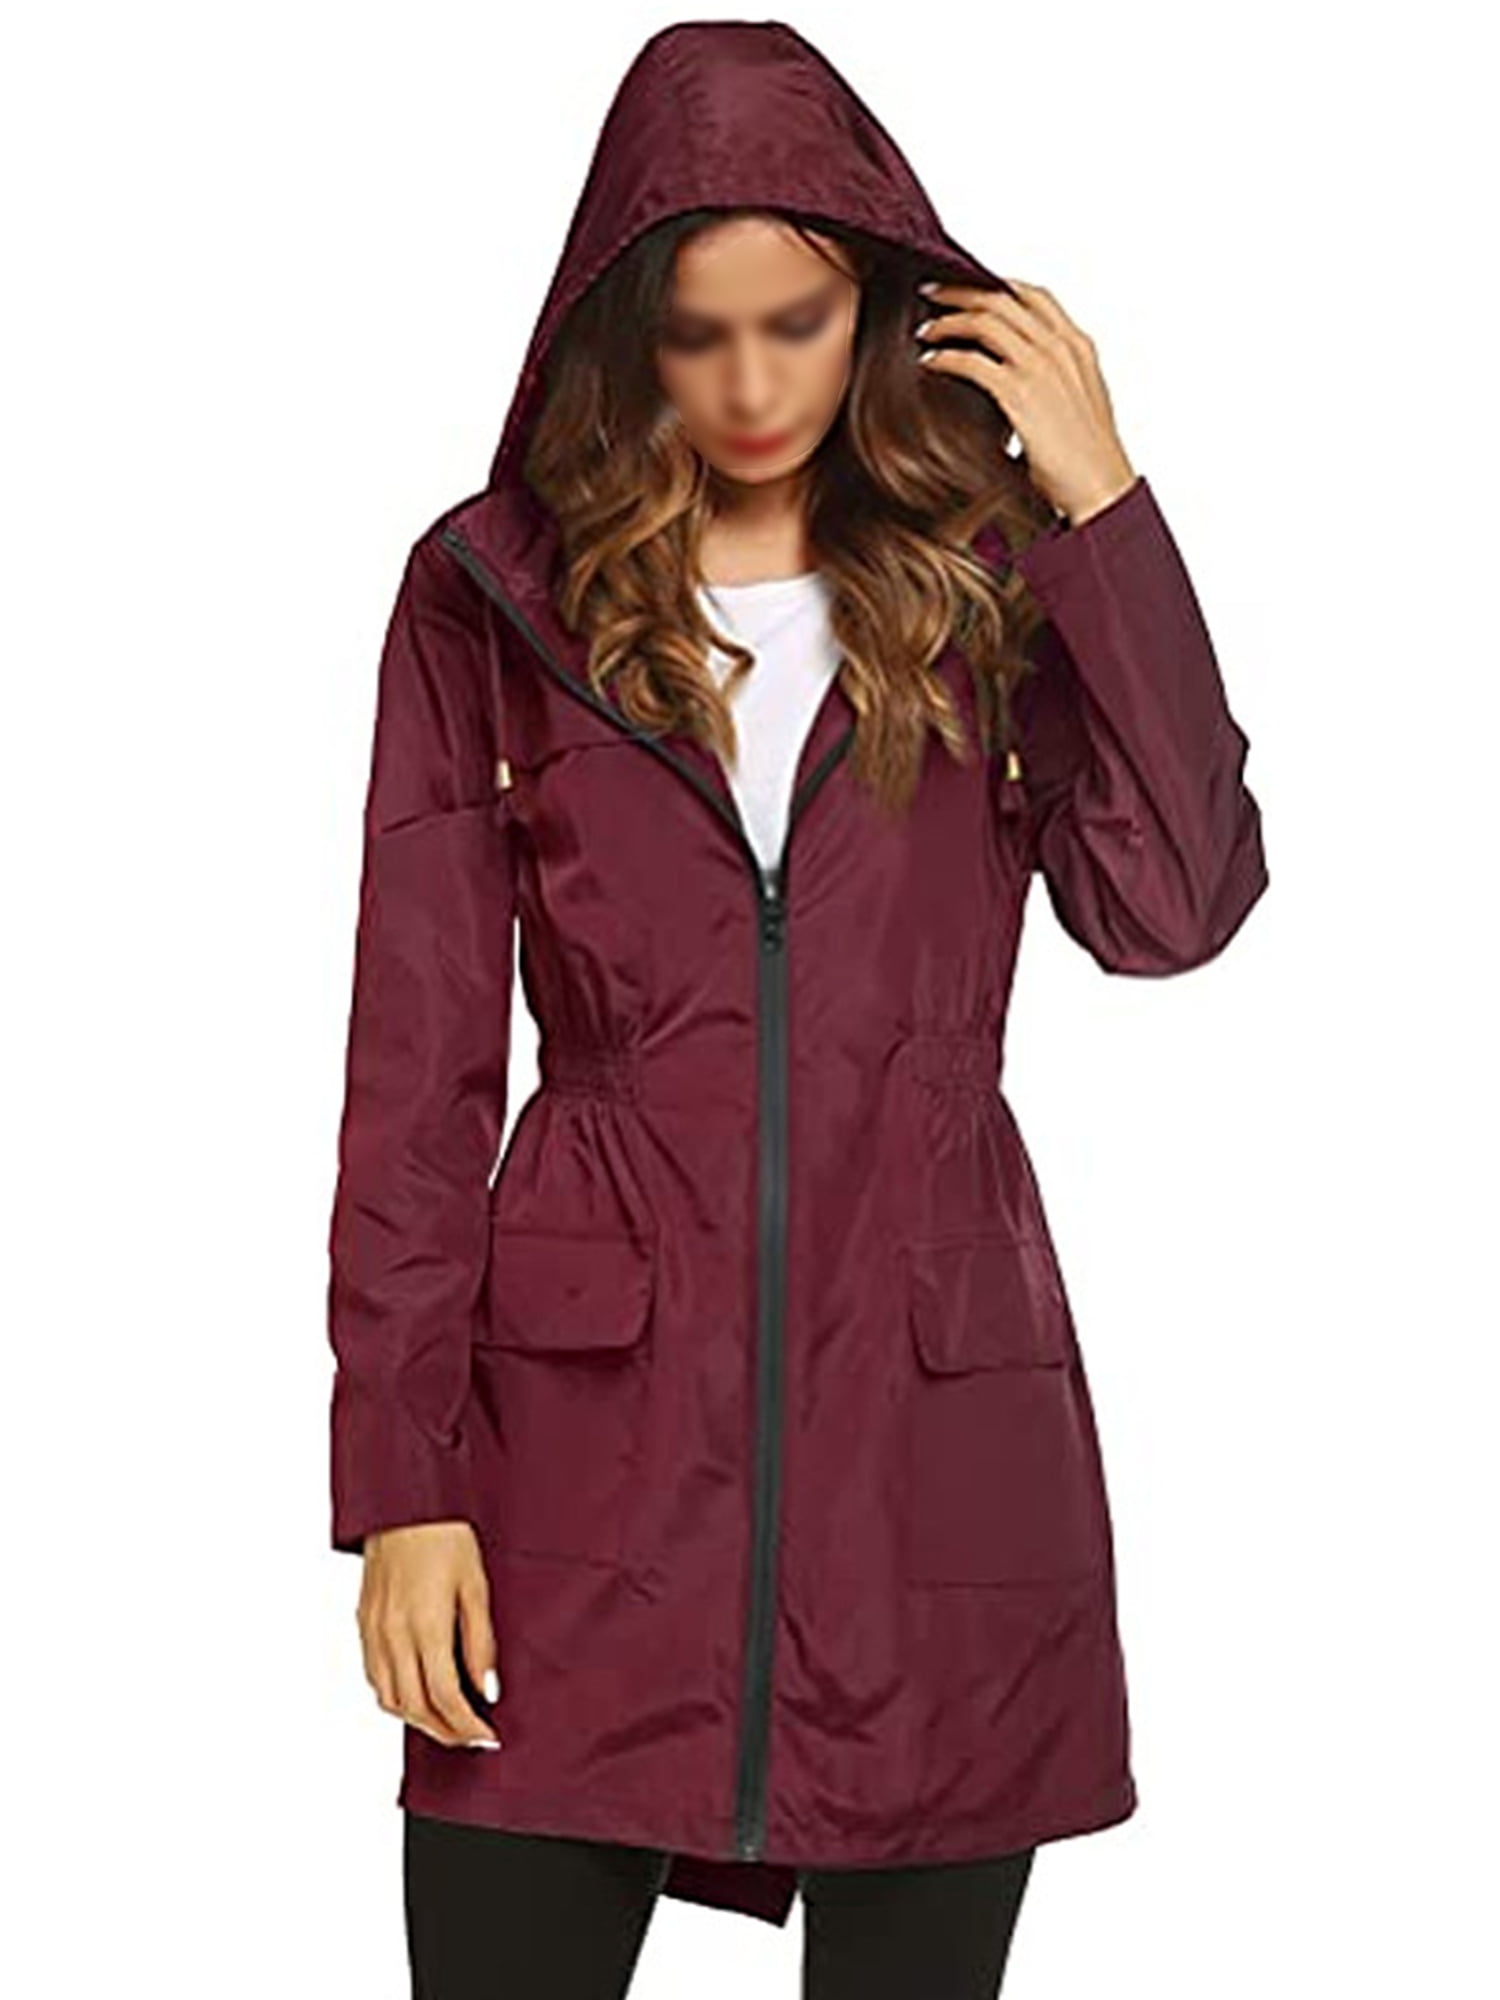 Casual Hooded Sweatshirt,Womens Girls Comfy Patchwork 1/4 Zip Long Sleeve Hoodie Rain Coat Top 